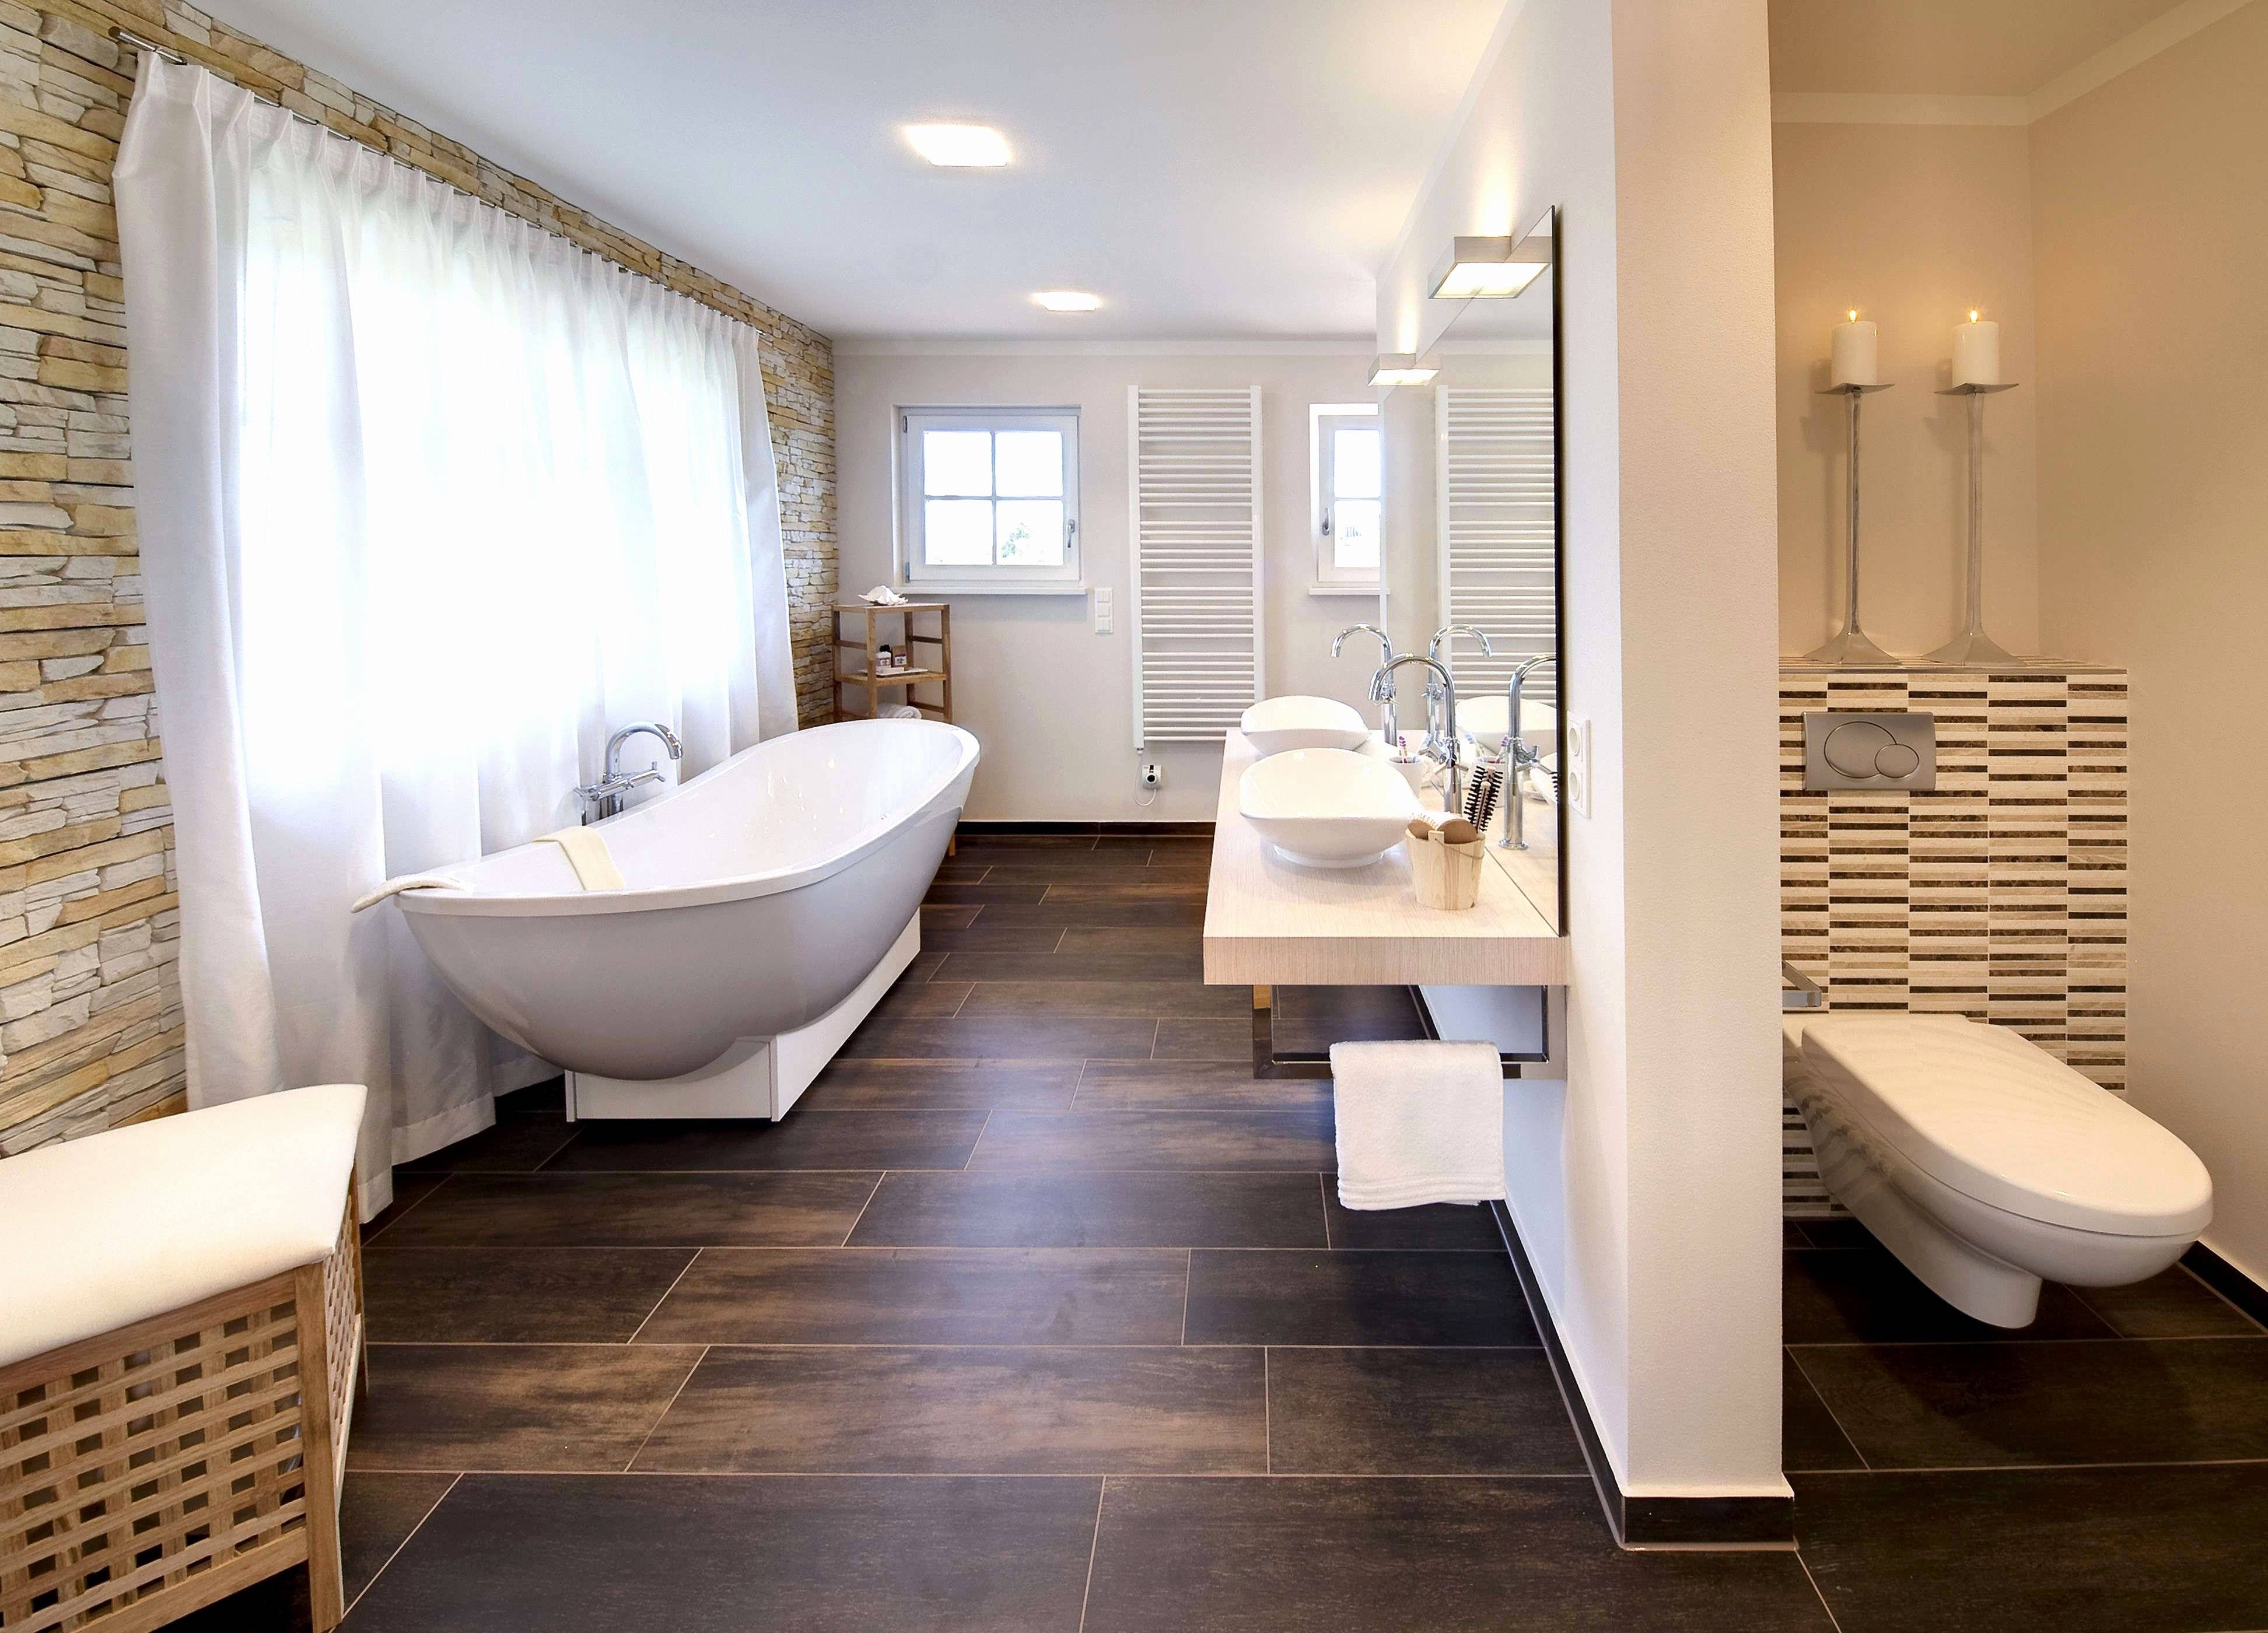 Ванная в частном доме - 80 фото оптимальных идей дизайна и украшения ванной